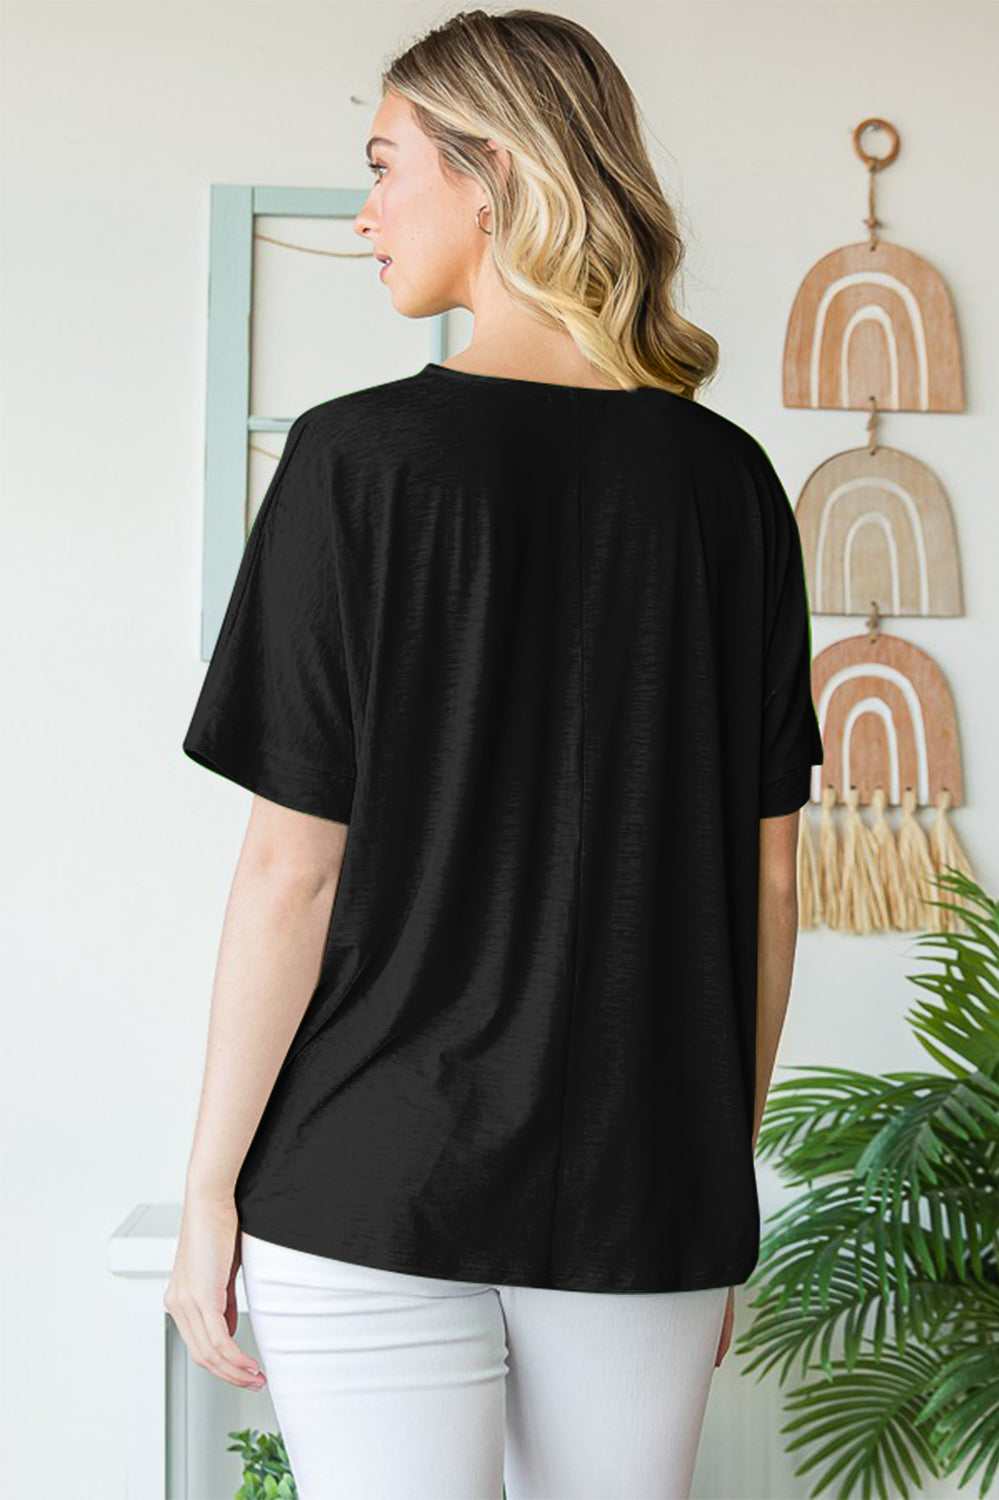 Heimish Full Size V-Neck Short Sleeve T-Shirt Trendsi